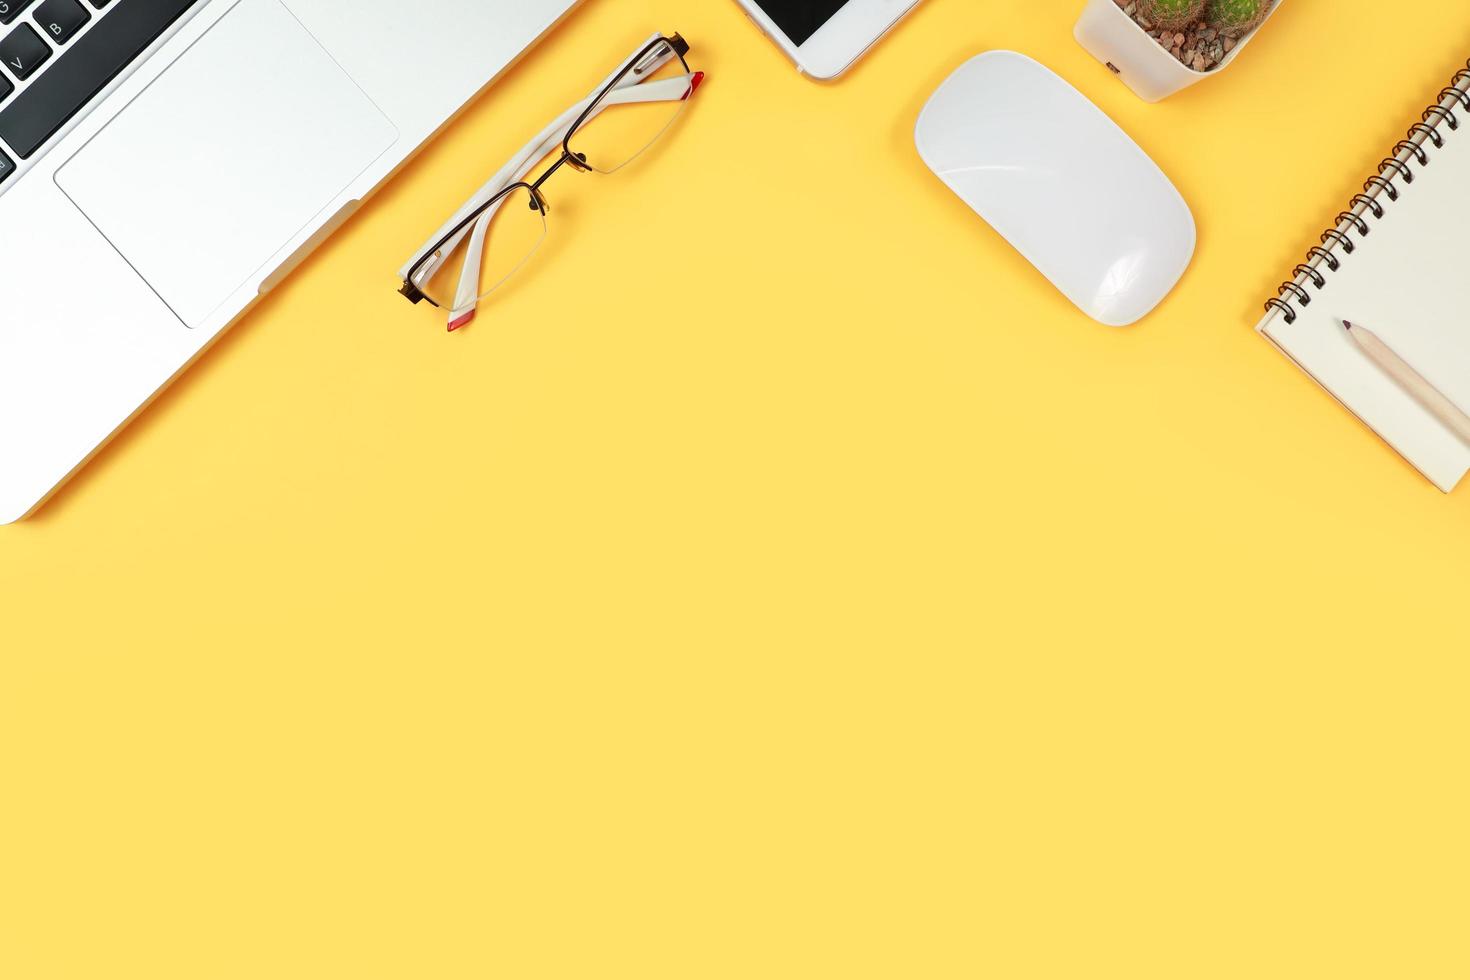 table d'espace de travail avec ordinateur portable, fournitures de bureau, tasse à café, téléphone portable et tasse à café sur fond jaune photo